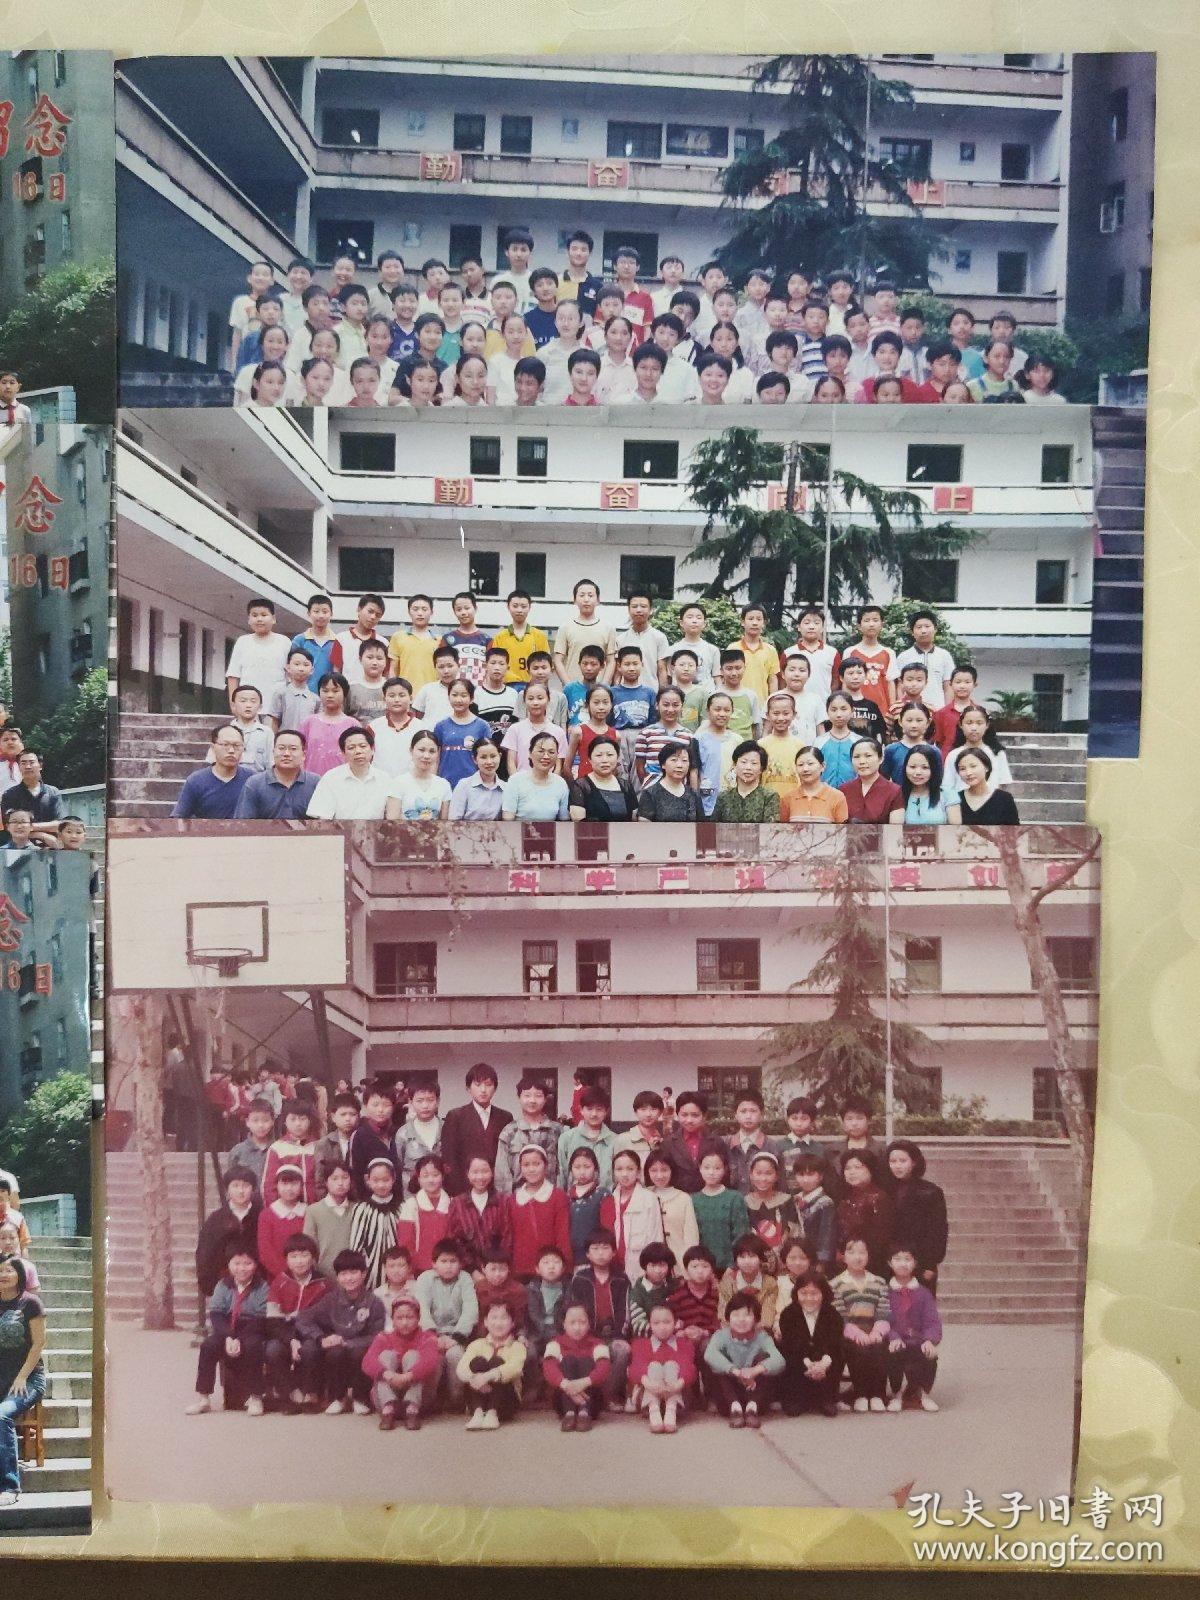 彩色照片：宜昌市红星路小学各个年代毕业班留念合影的彩色照片     共6张照片售     彩色照片箱3   00199